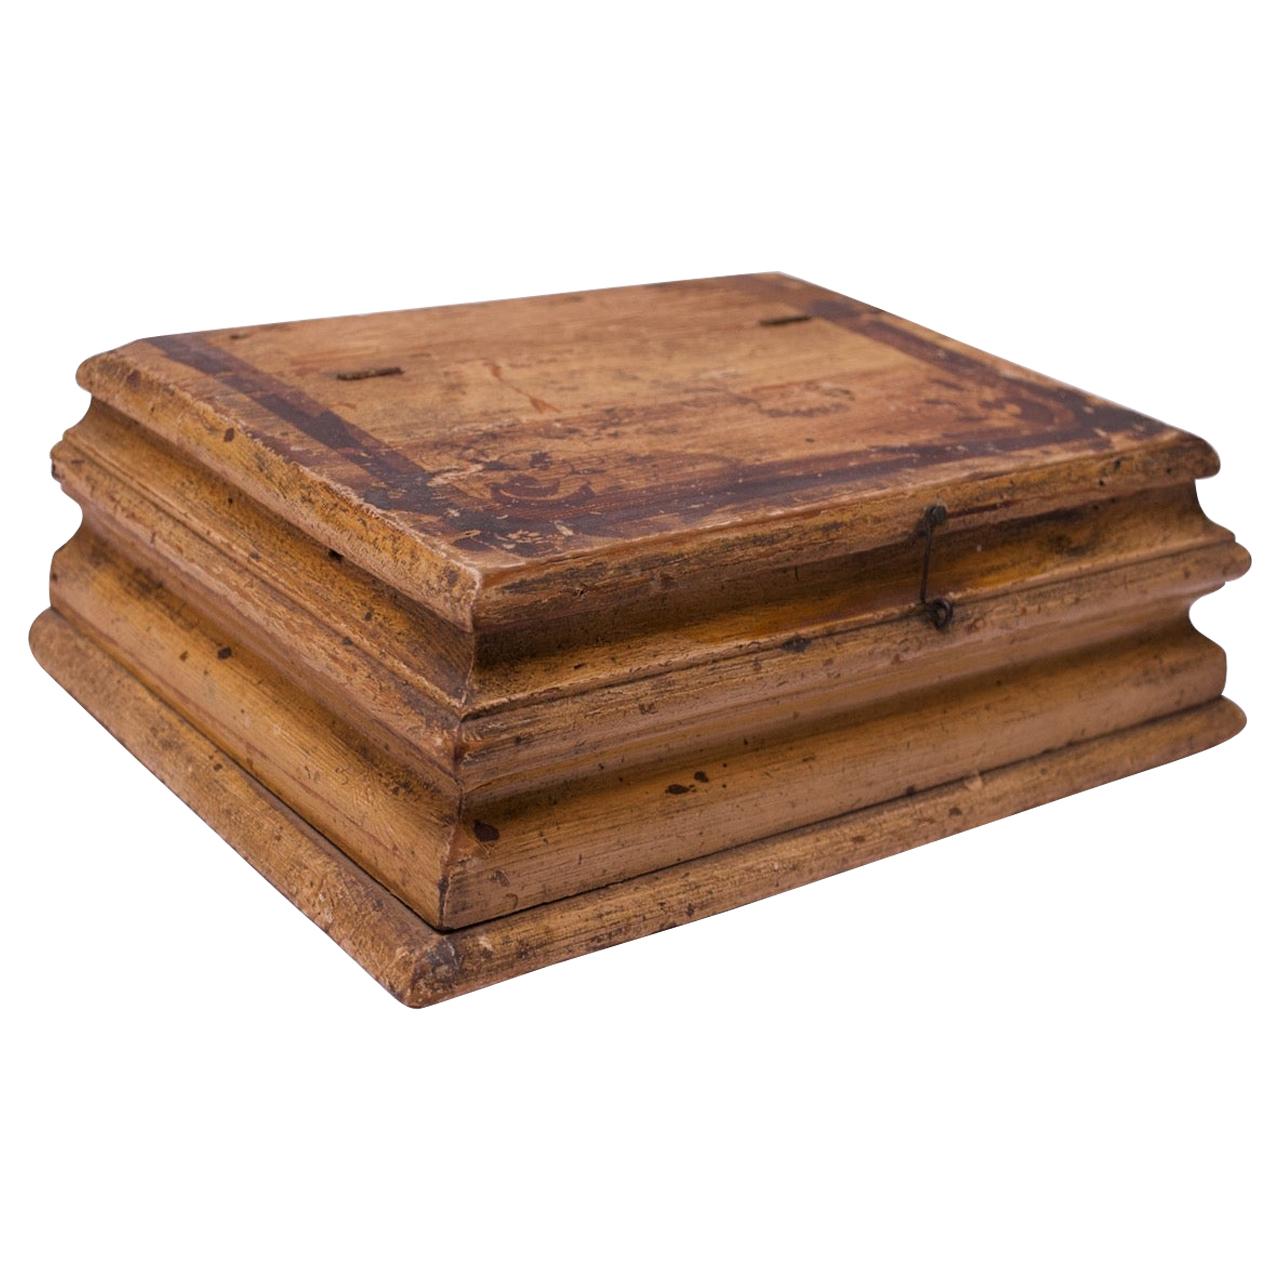 19th Century American Pine Primitive Decorative Box